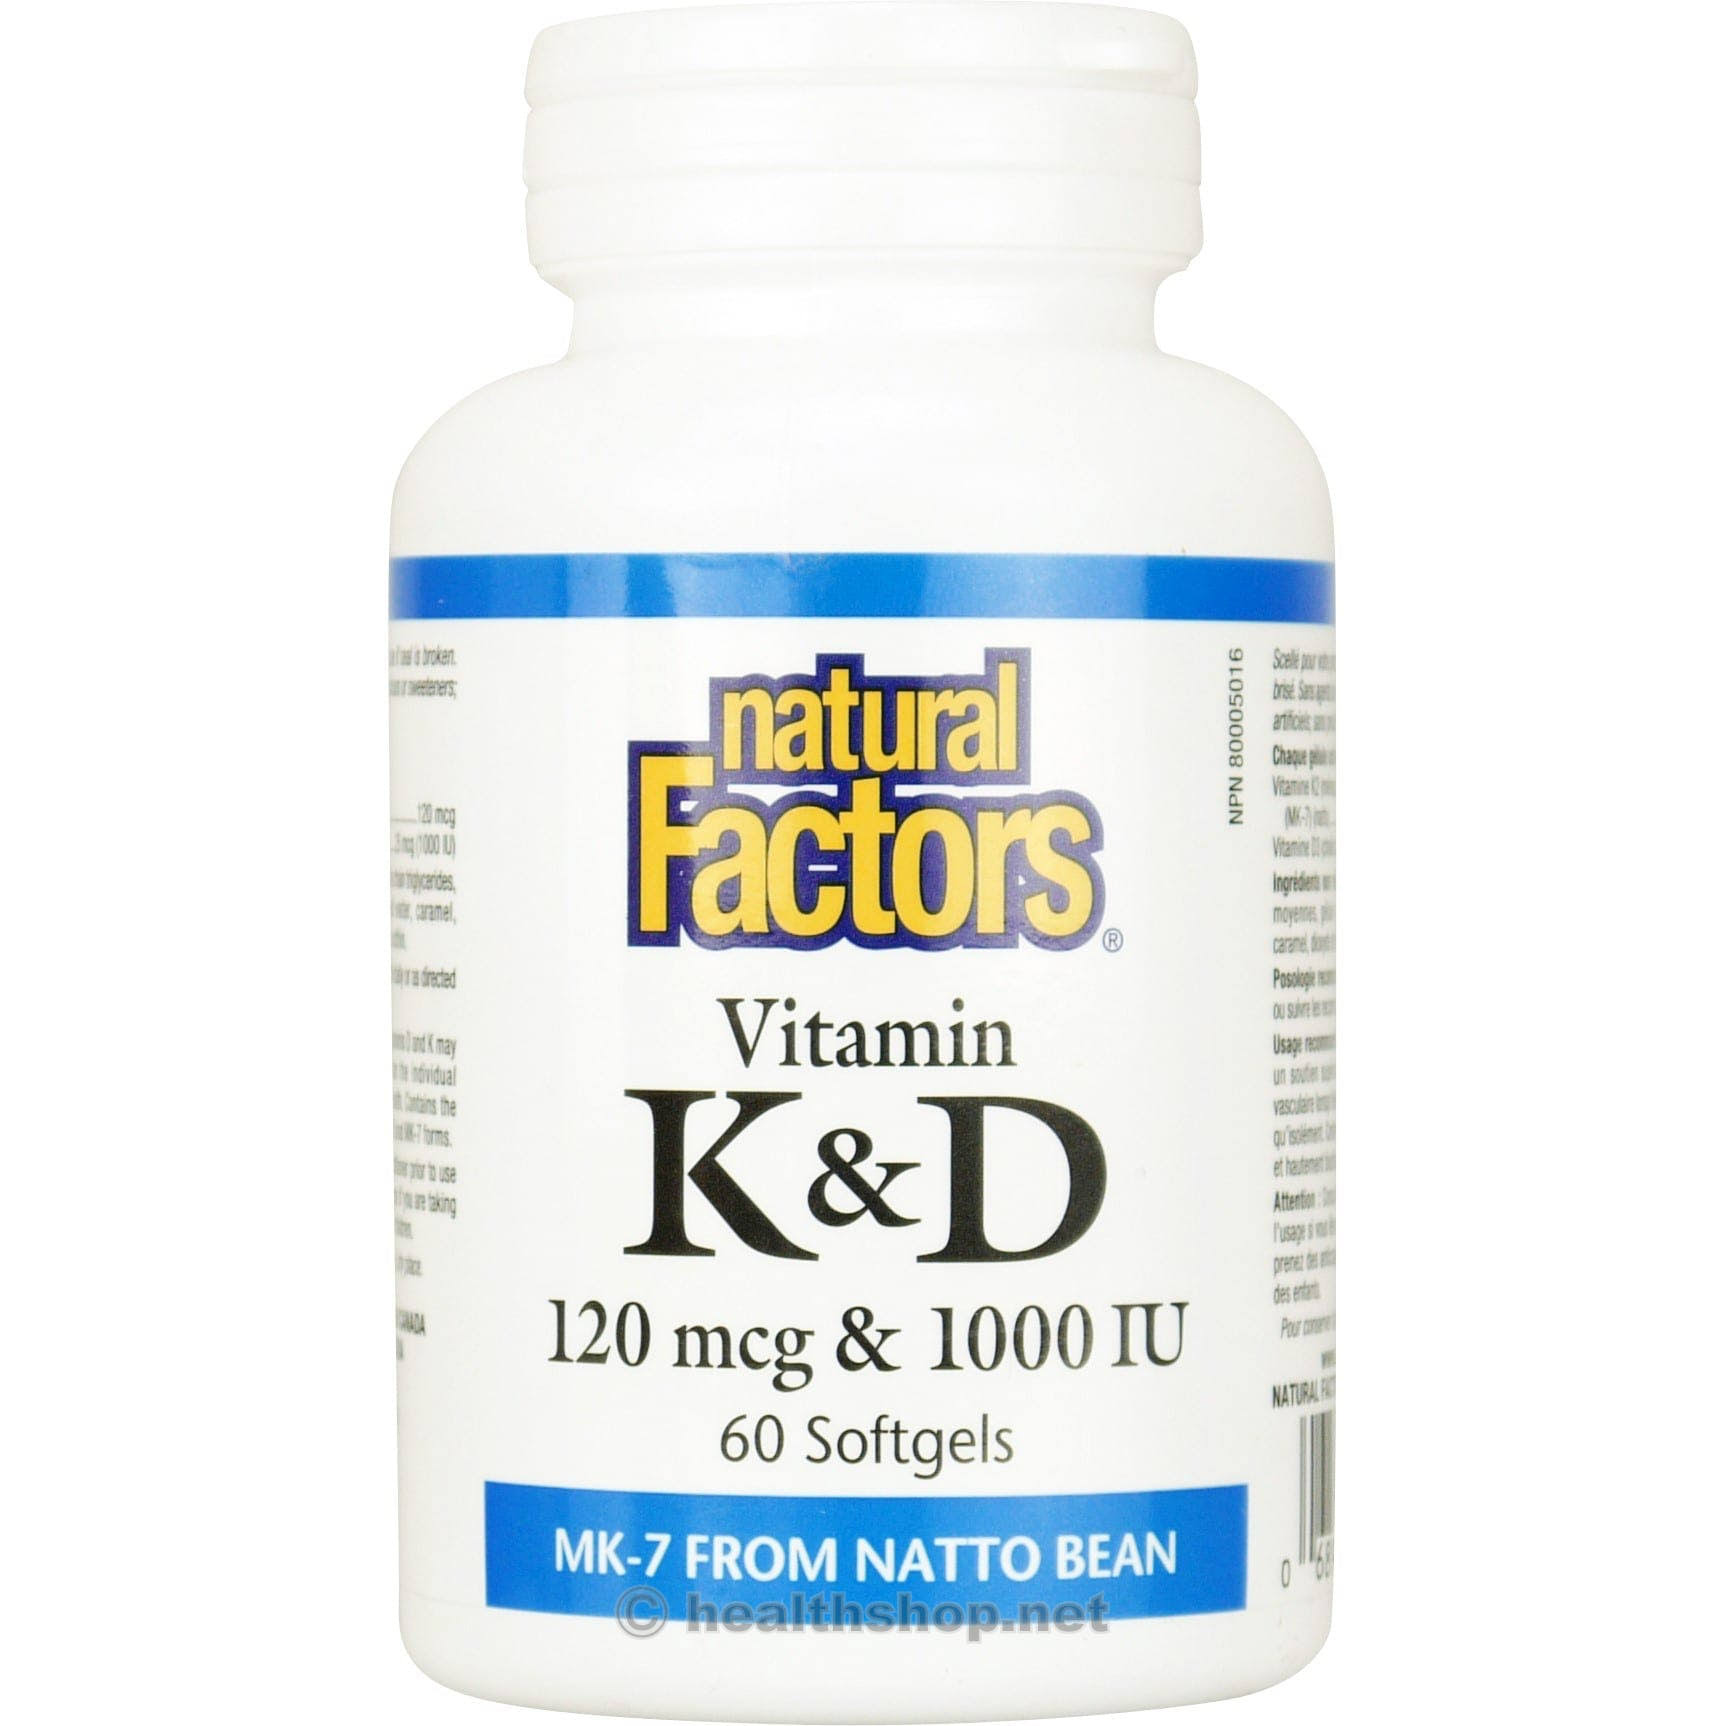 Natural Factors Vitamin K & D - 60 Softgels